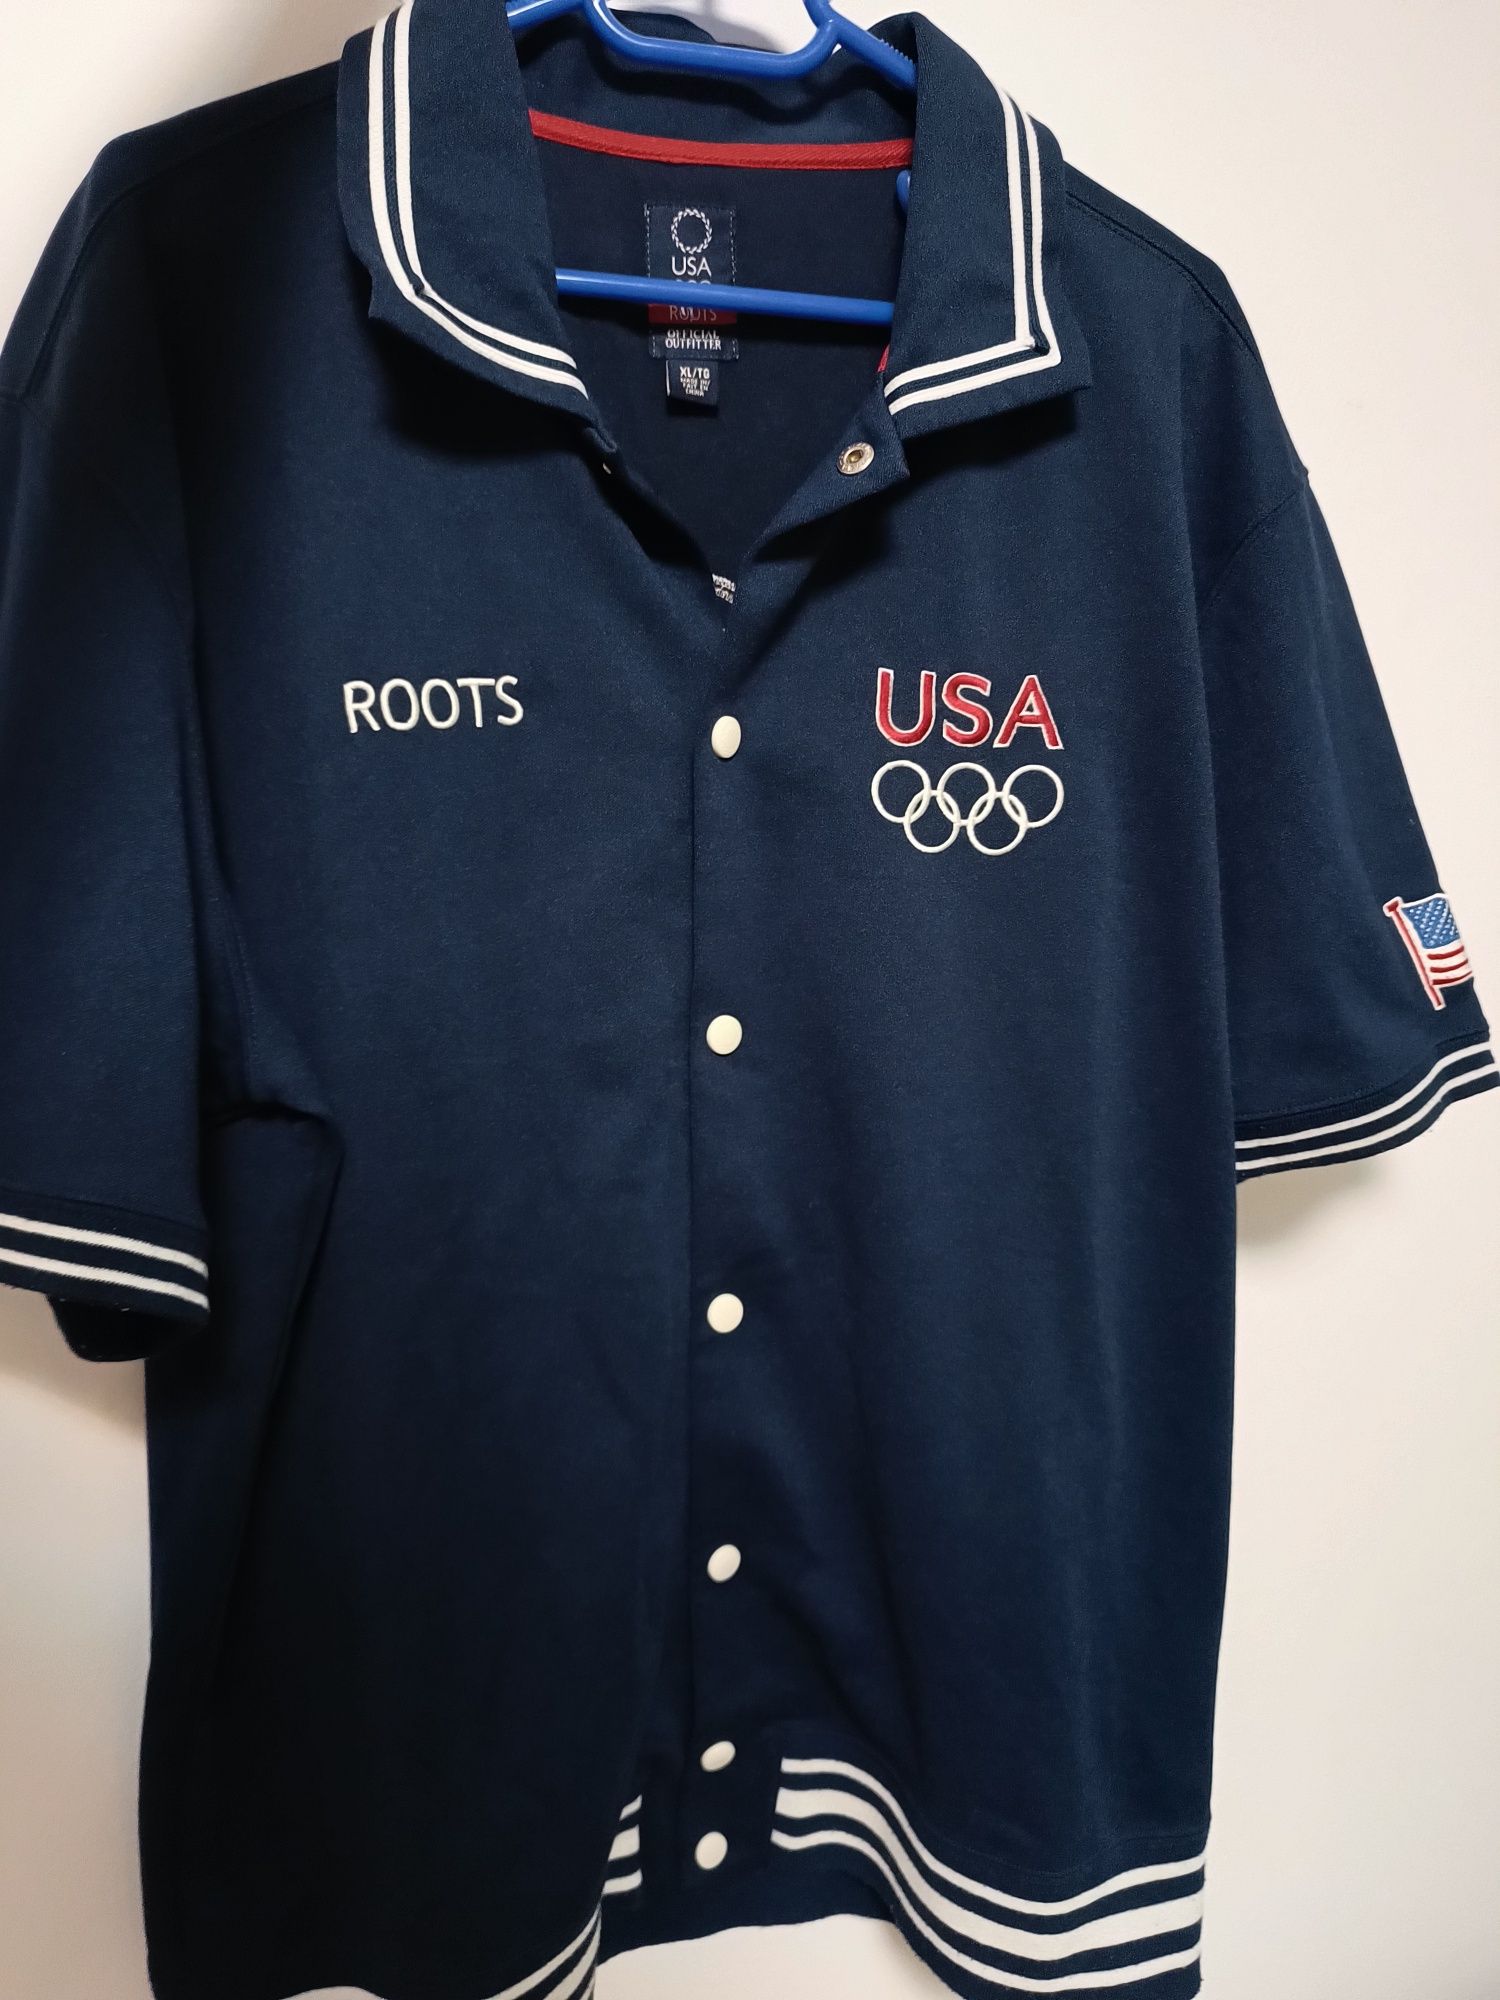 Vând jachetă vintage model 2004 USA Olympic Basketball team